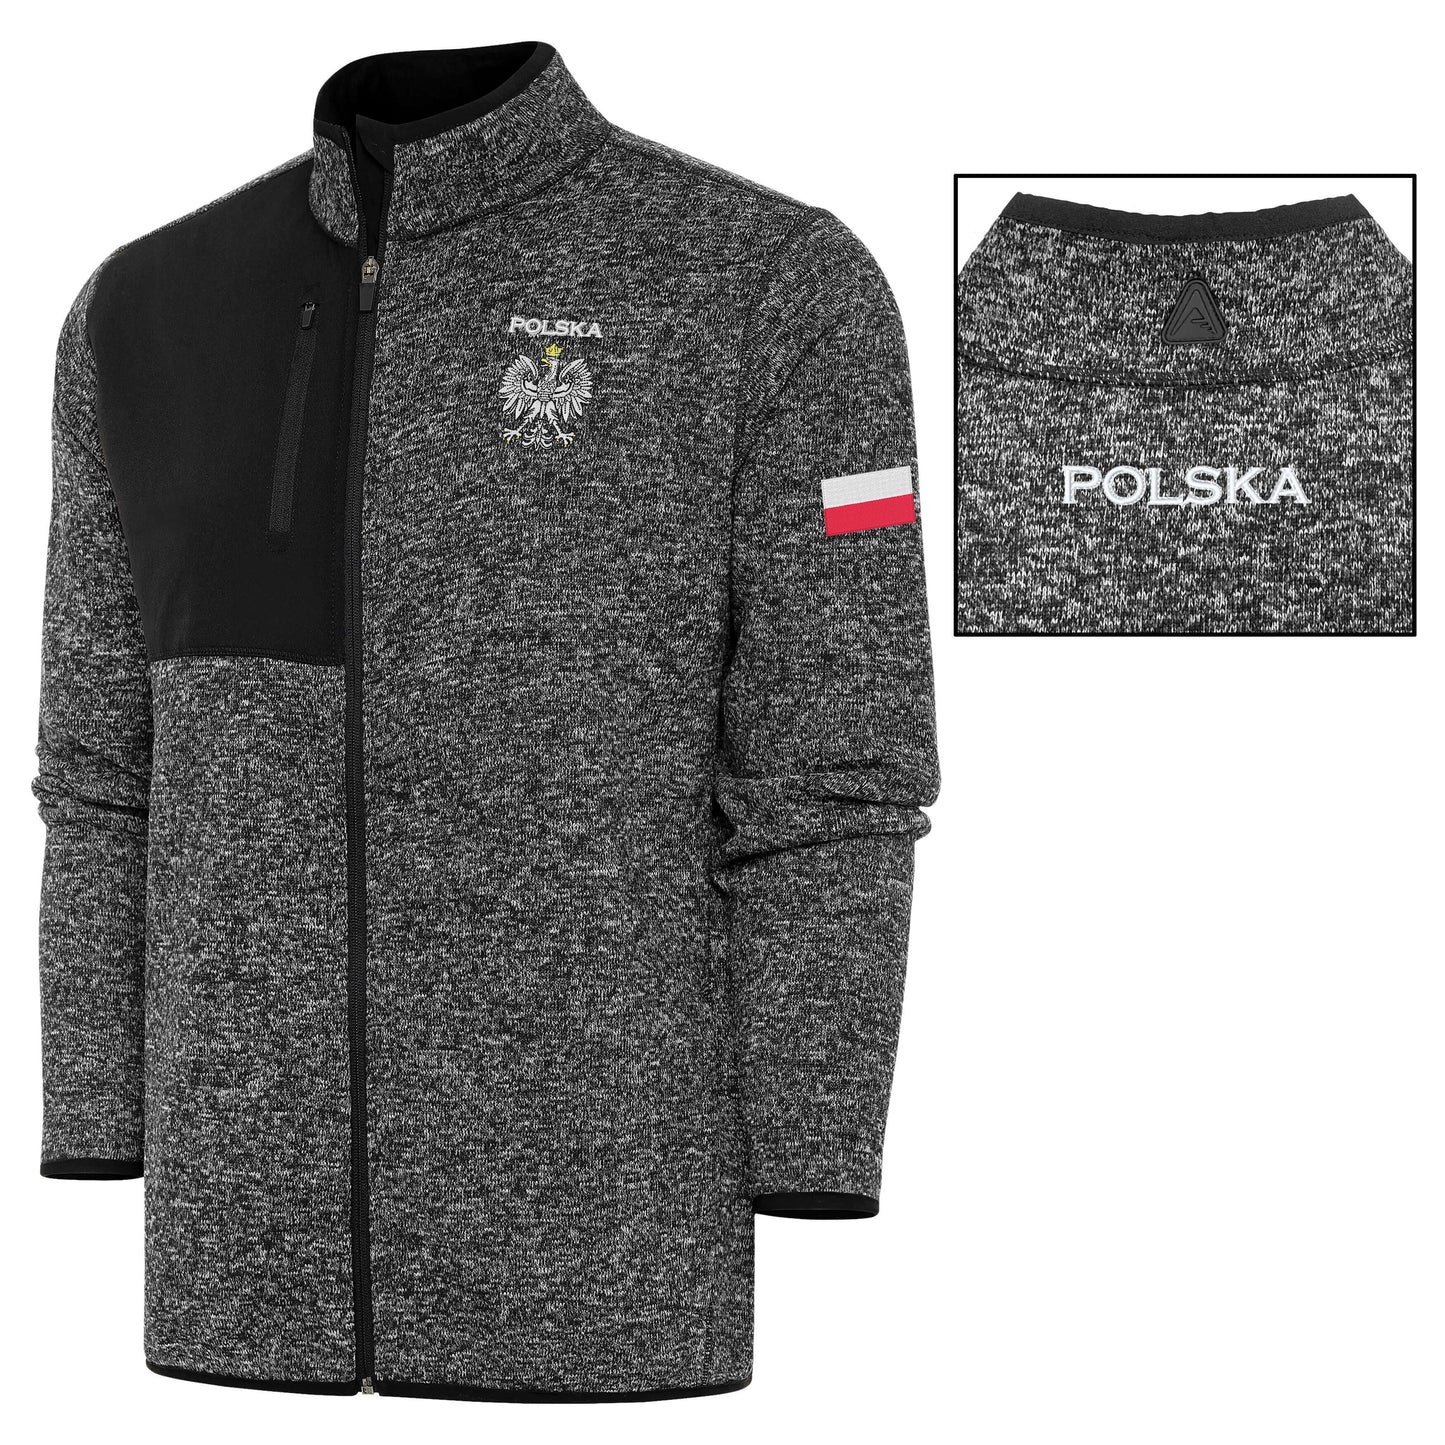 Polish Full - Zip Jacket + America - Polish Flag Bondle